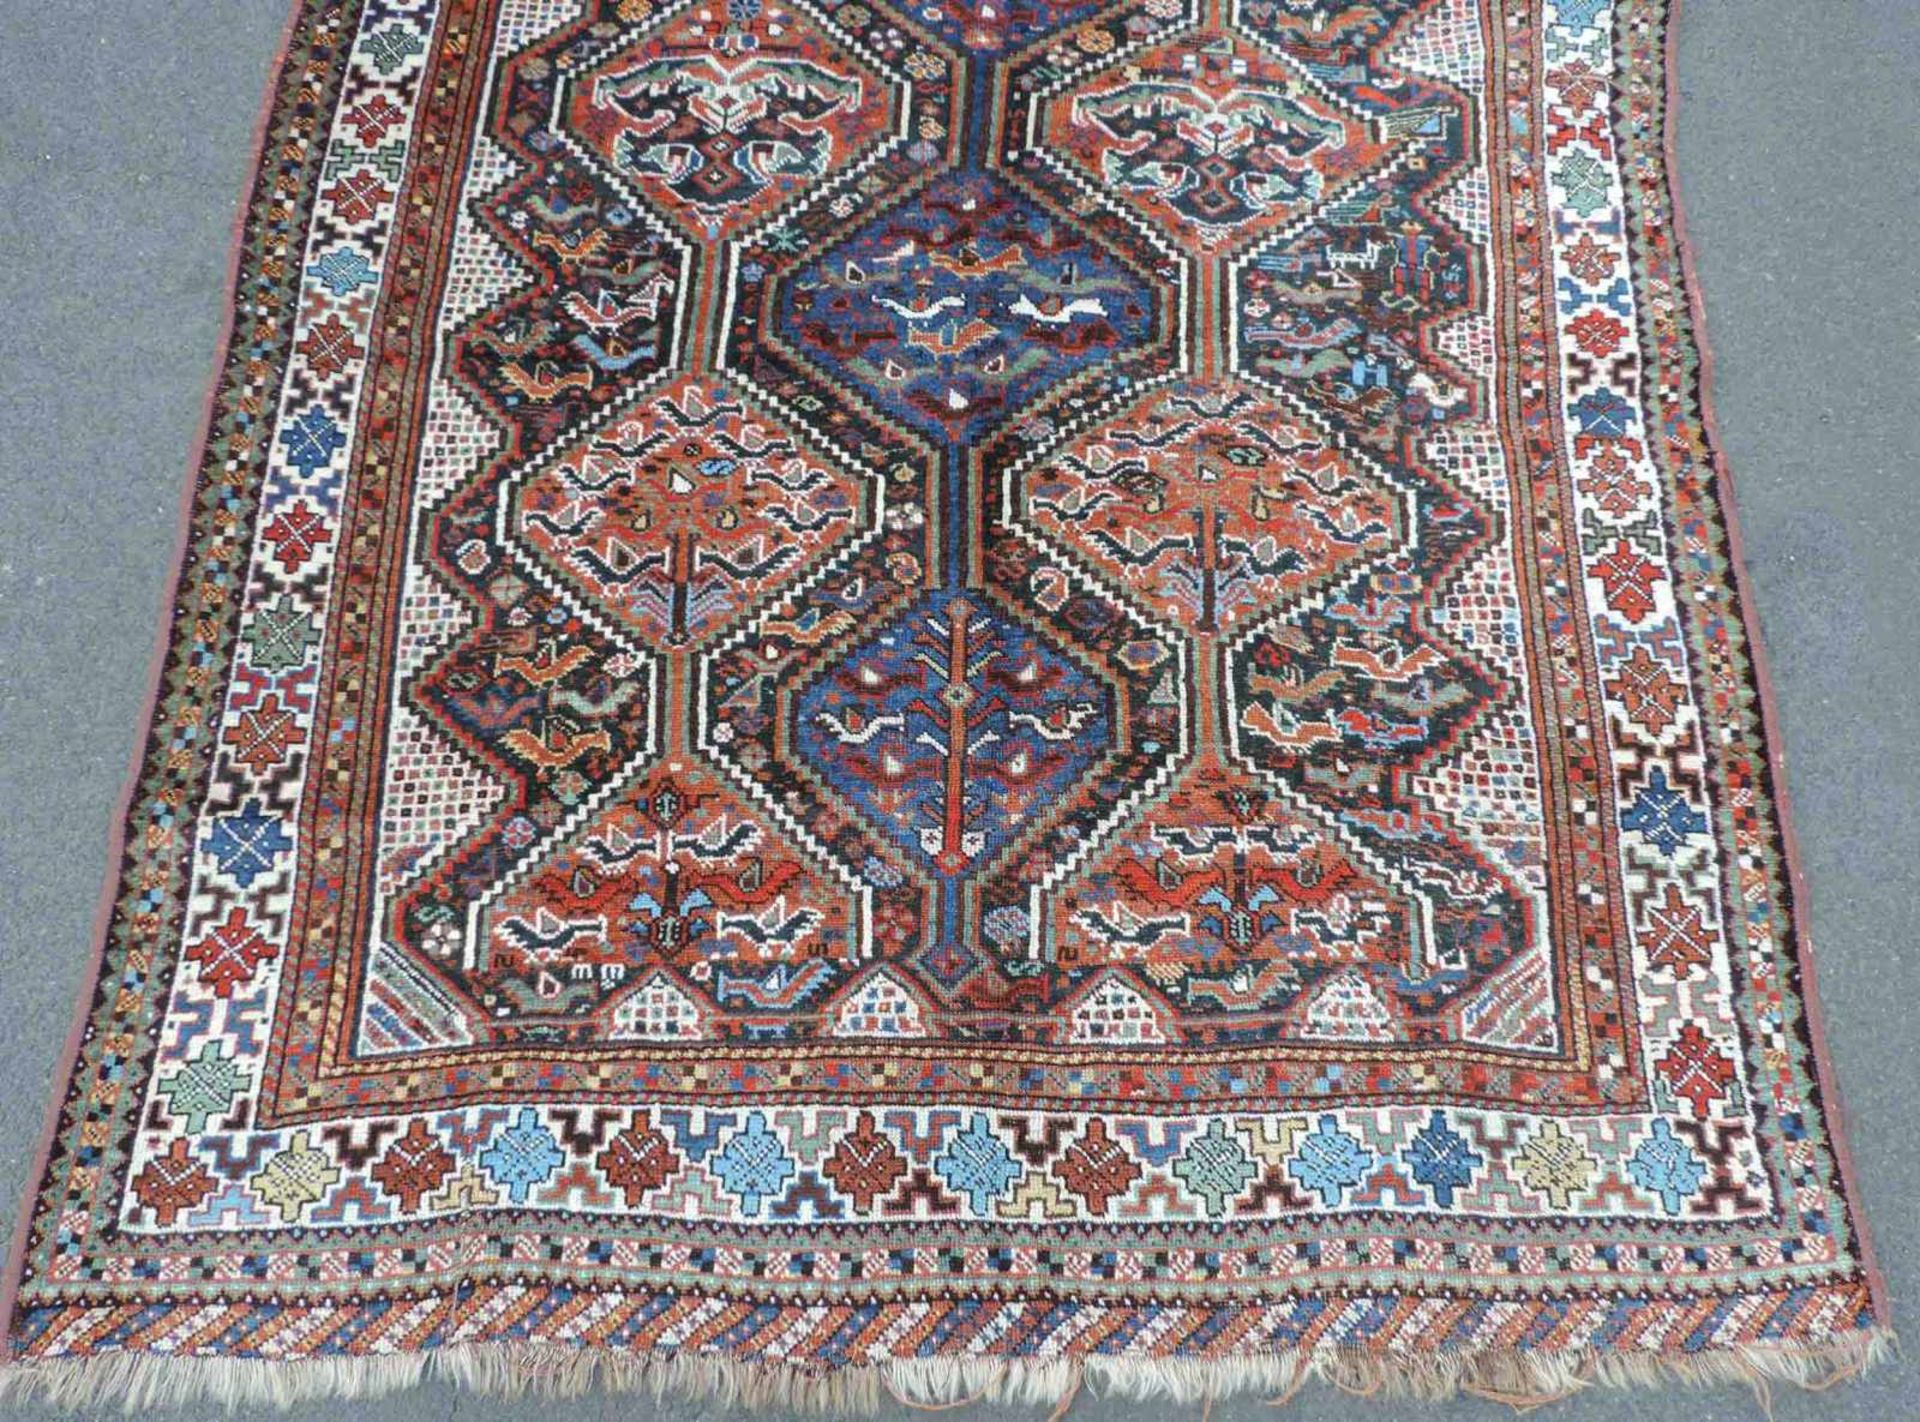 Khamseh Stammesteppich. Iran. Antik, um 1900. 199 cm x 152 cm. Handgeknüpft. Wolle auf Wolle. - Bild 2 aus 5